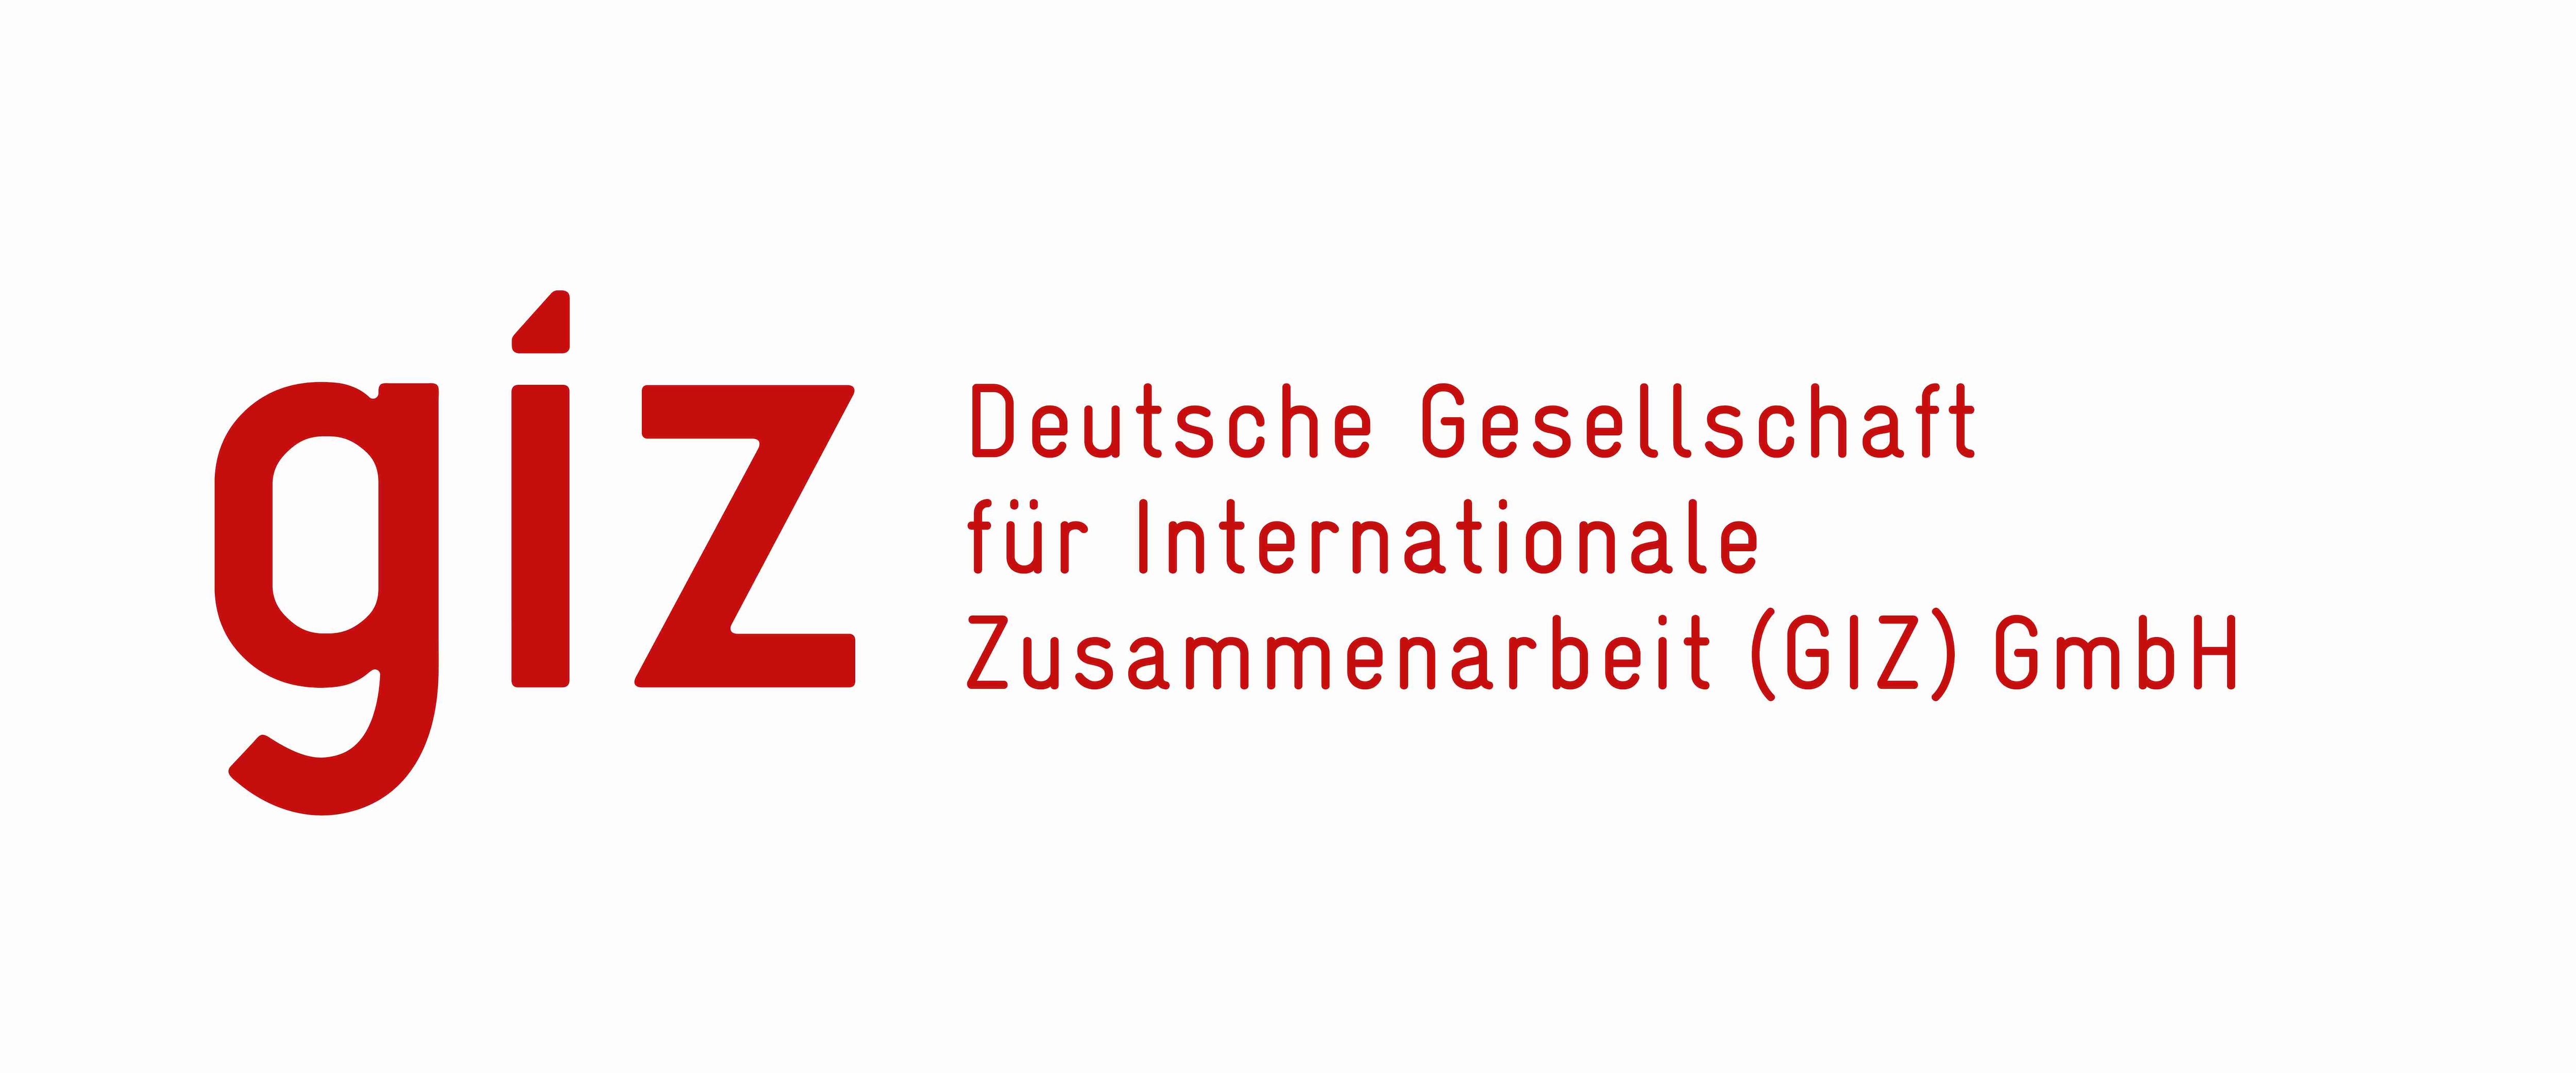 Logo Deutsche Gesellschaft für Internationale Zusammenarbeit​